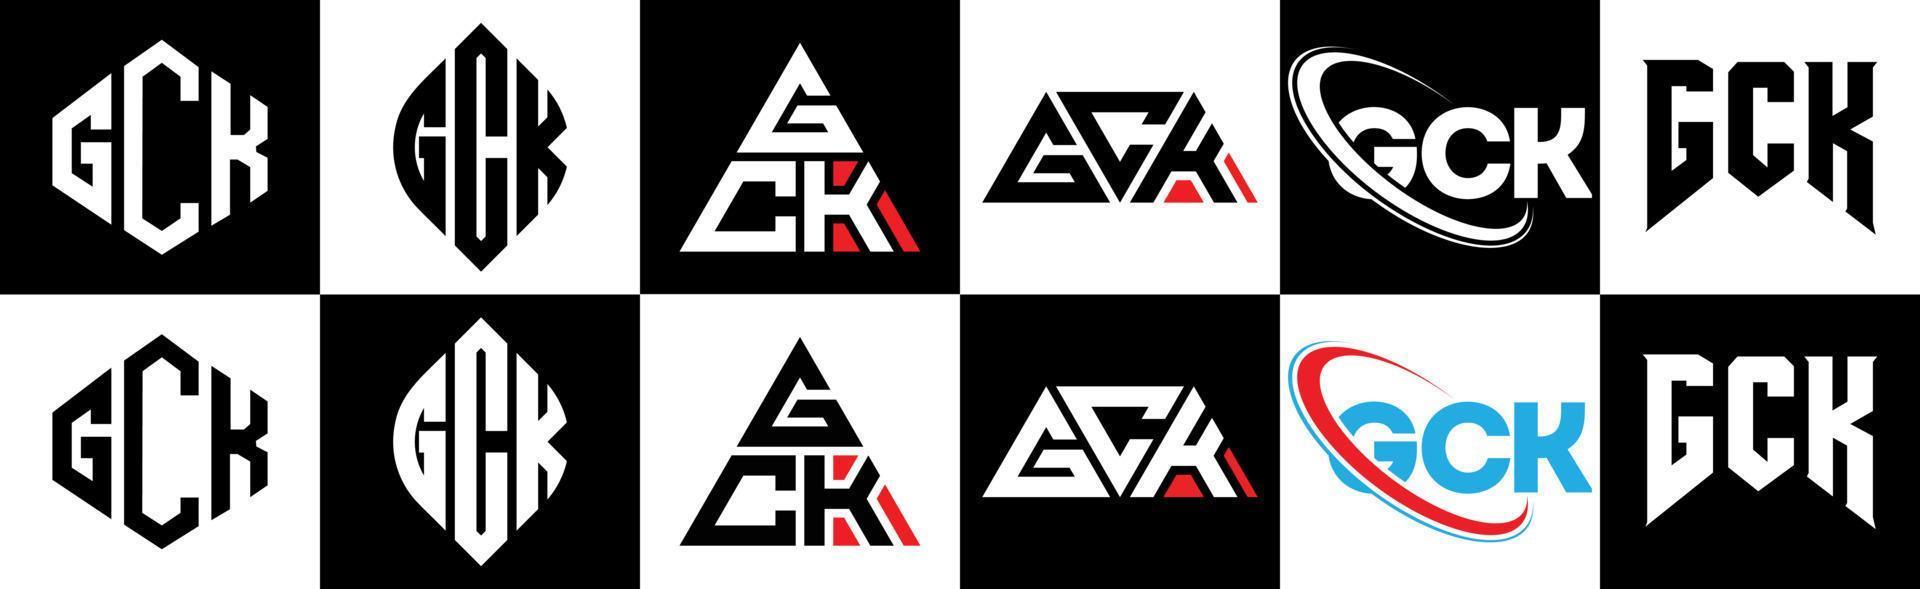 gck-Buchstaben-Logo-Design in sechs Stilen. gck polygon, kreis, dreieck, sechseck, flacher und einfacher stil mit schwarz-weißem buchstabenlogo in einer zeichenfläche. Gck minimalistisches und klassisches Logo vektor